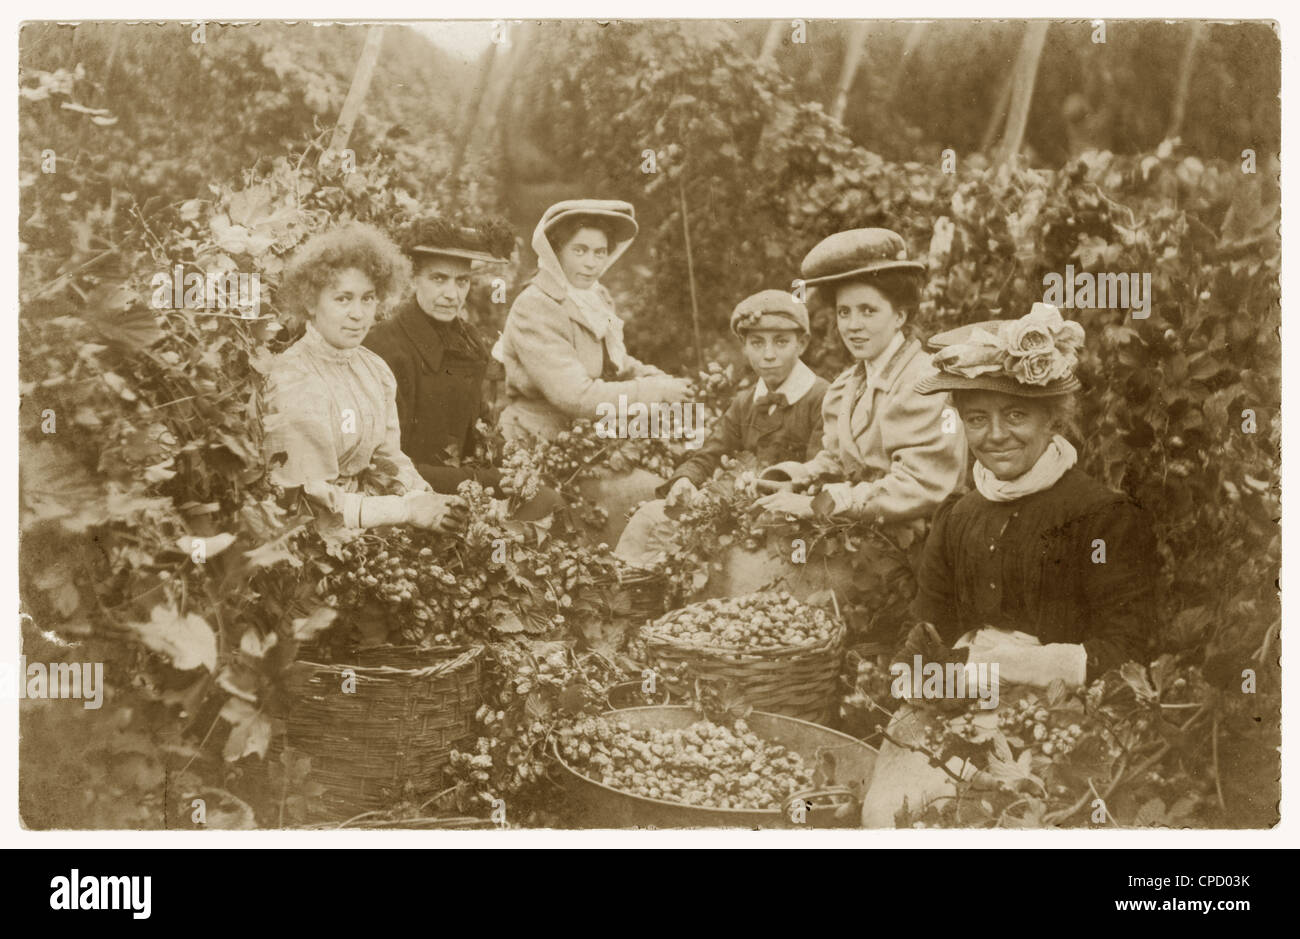 Cartolina edoardiana di luppolo che guarda felice pickers, in vacanza di lavoro, possibilmente in Kent, U.K circa 1905 Foto Stock